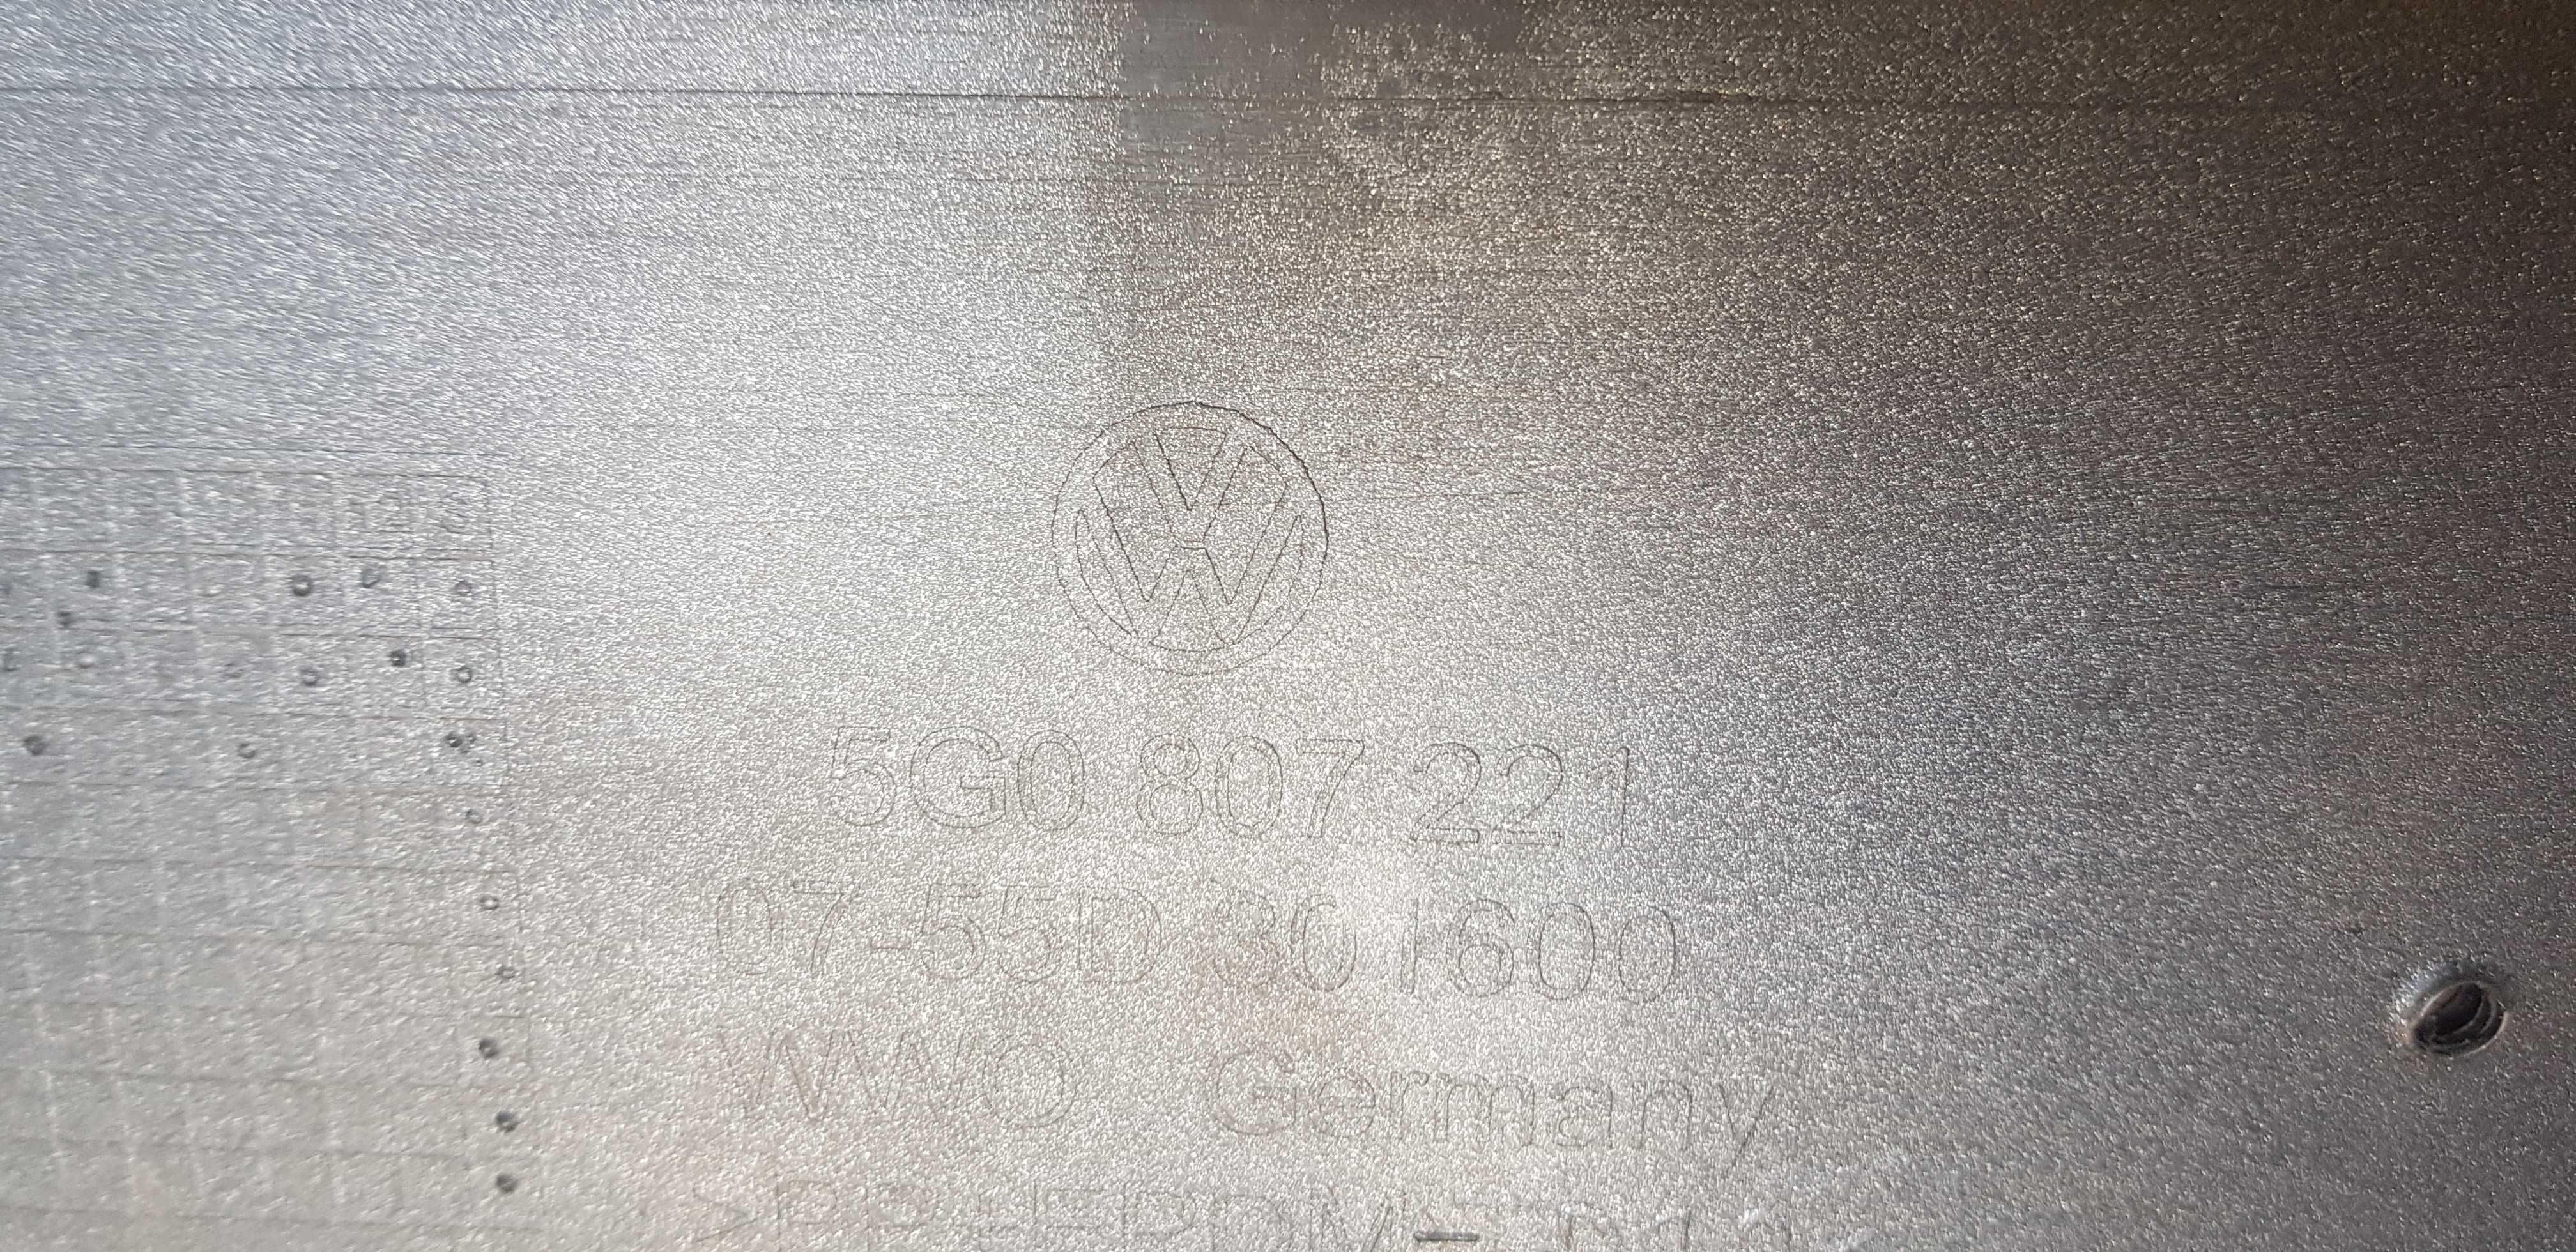 VW GOLF VII 7 12-16 PDC zderzak przedni kratki oryginał ładny.